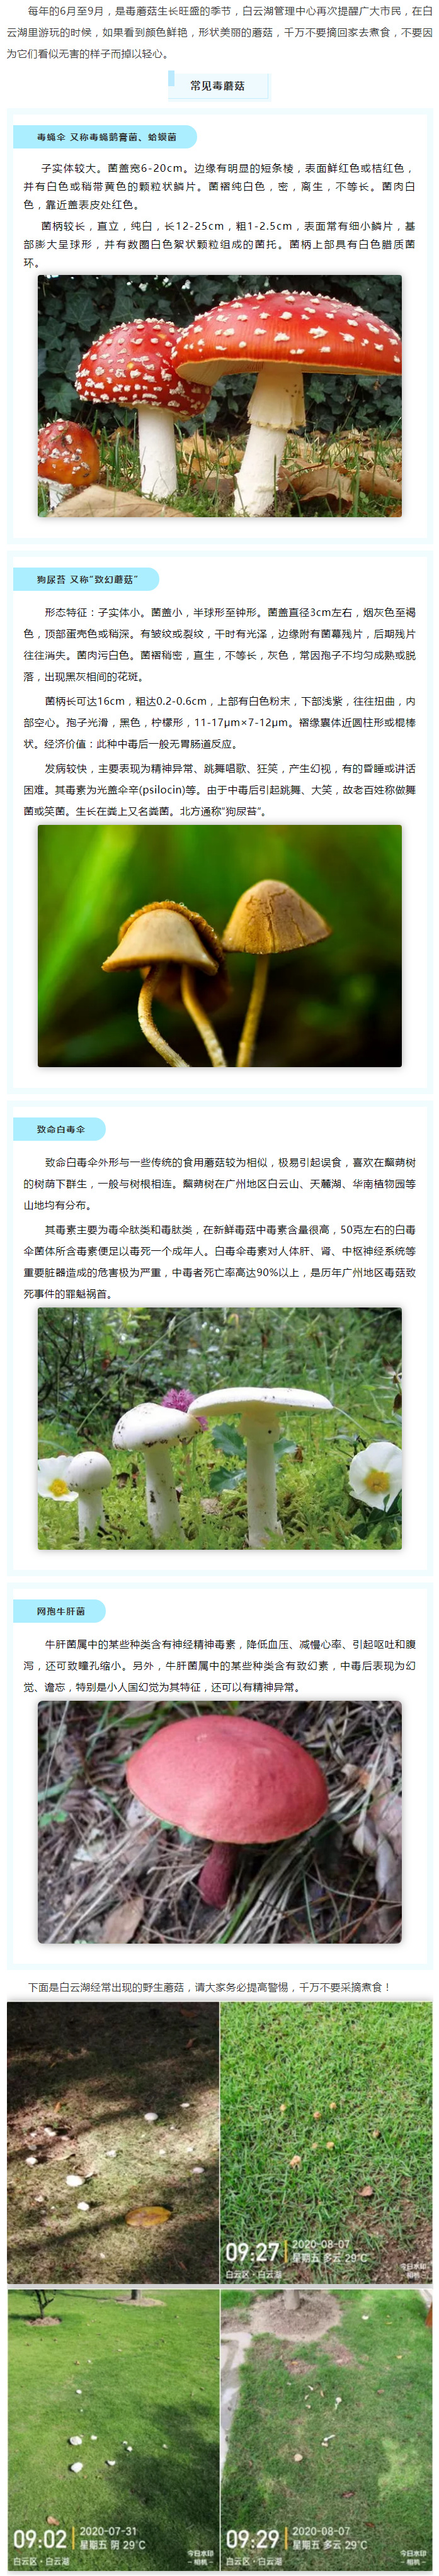 白云湖里的蘑菇再可爱，也千万不要采摘！_副本.jpg